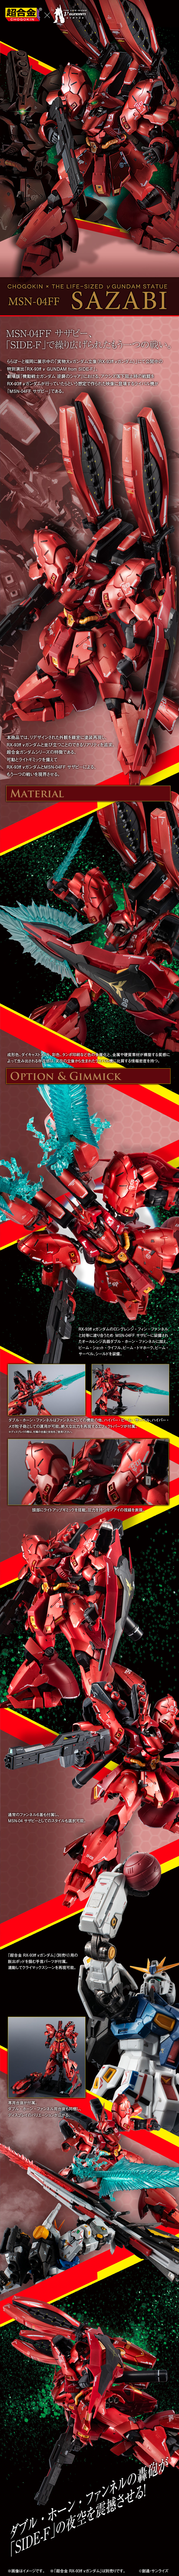 ROBOT SPIRITS <SIDE MS> RX-93ff ν Juego de piezas opcionales de Gundam